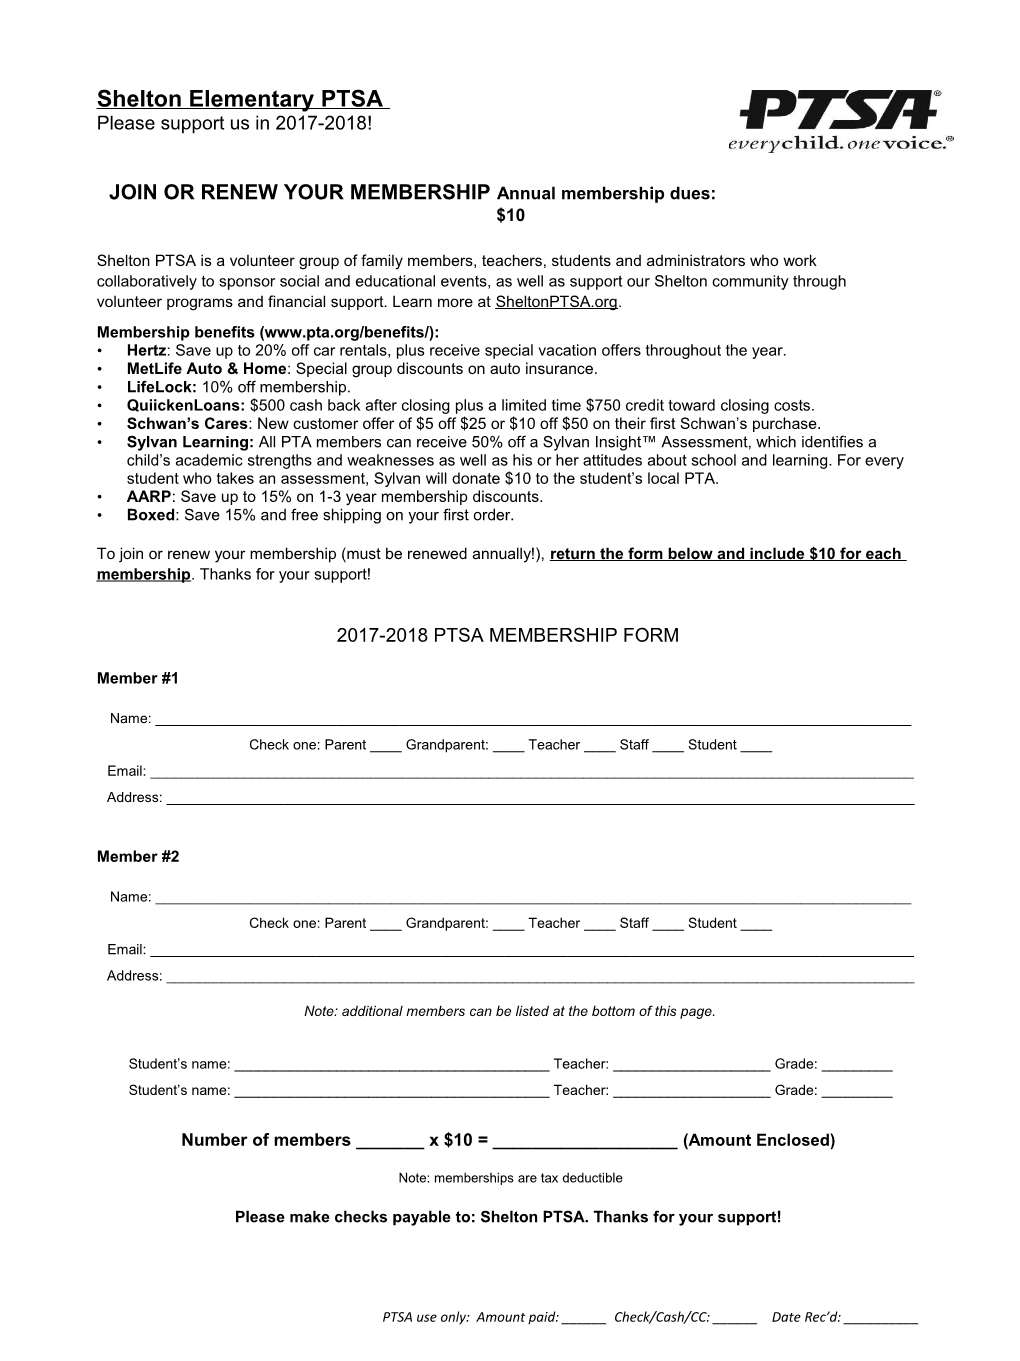 Shelton PTSA Membership Form